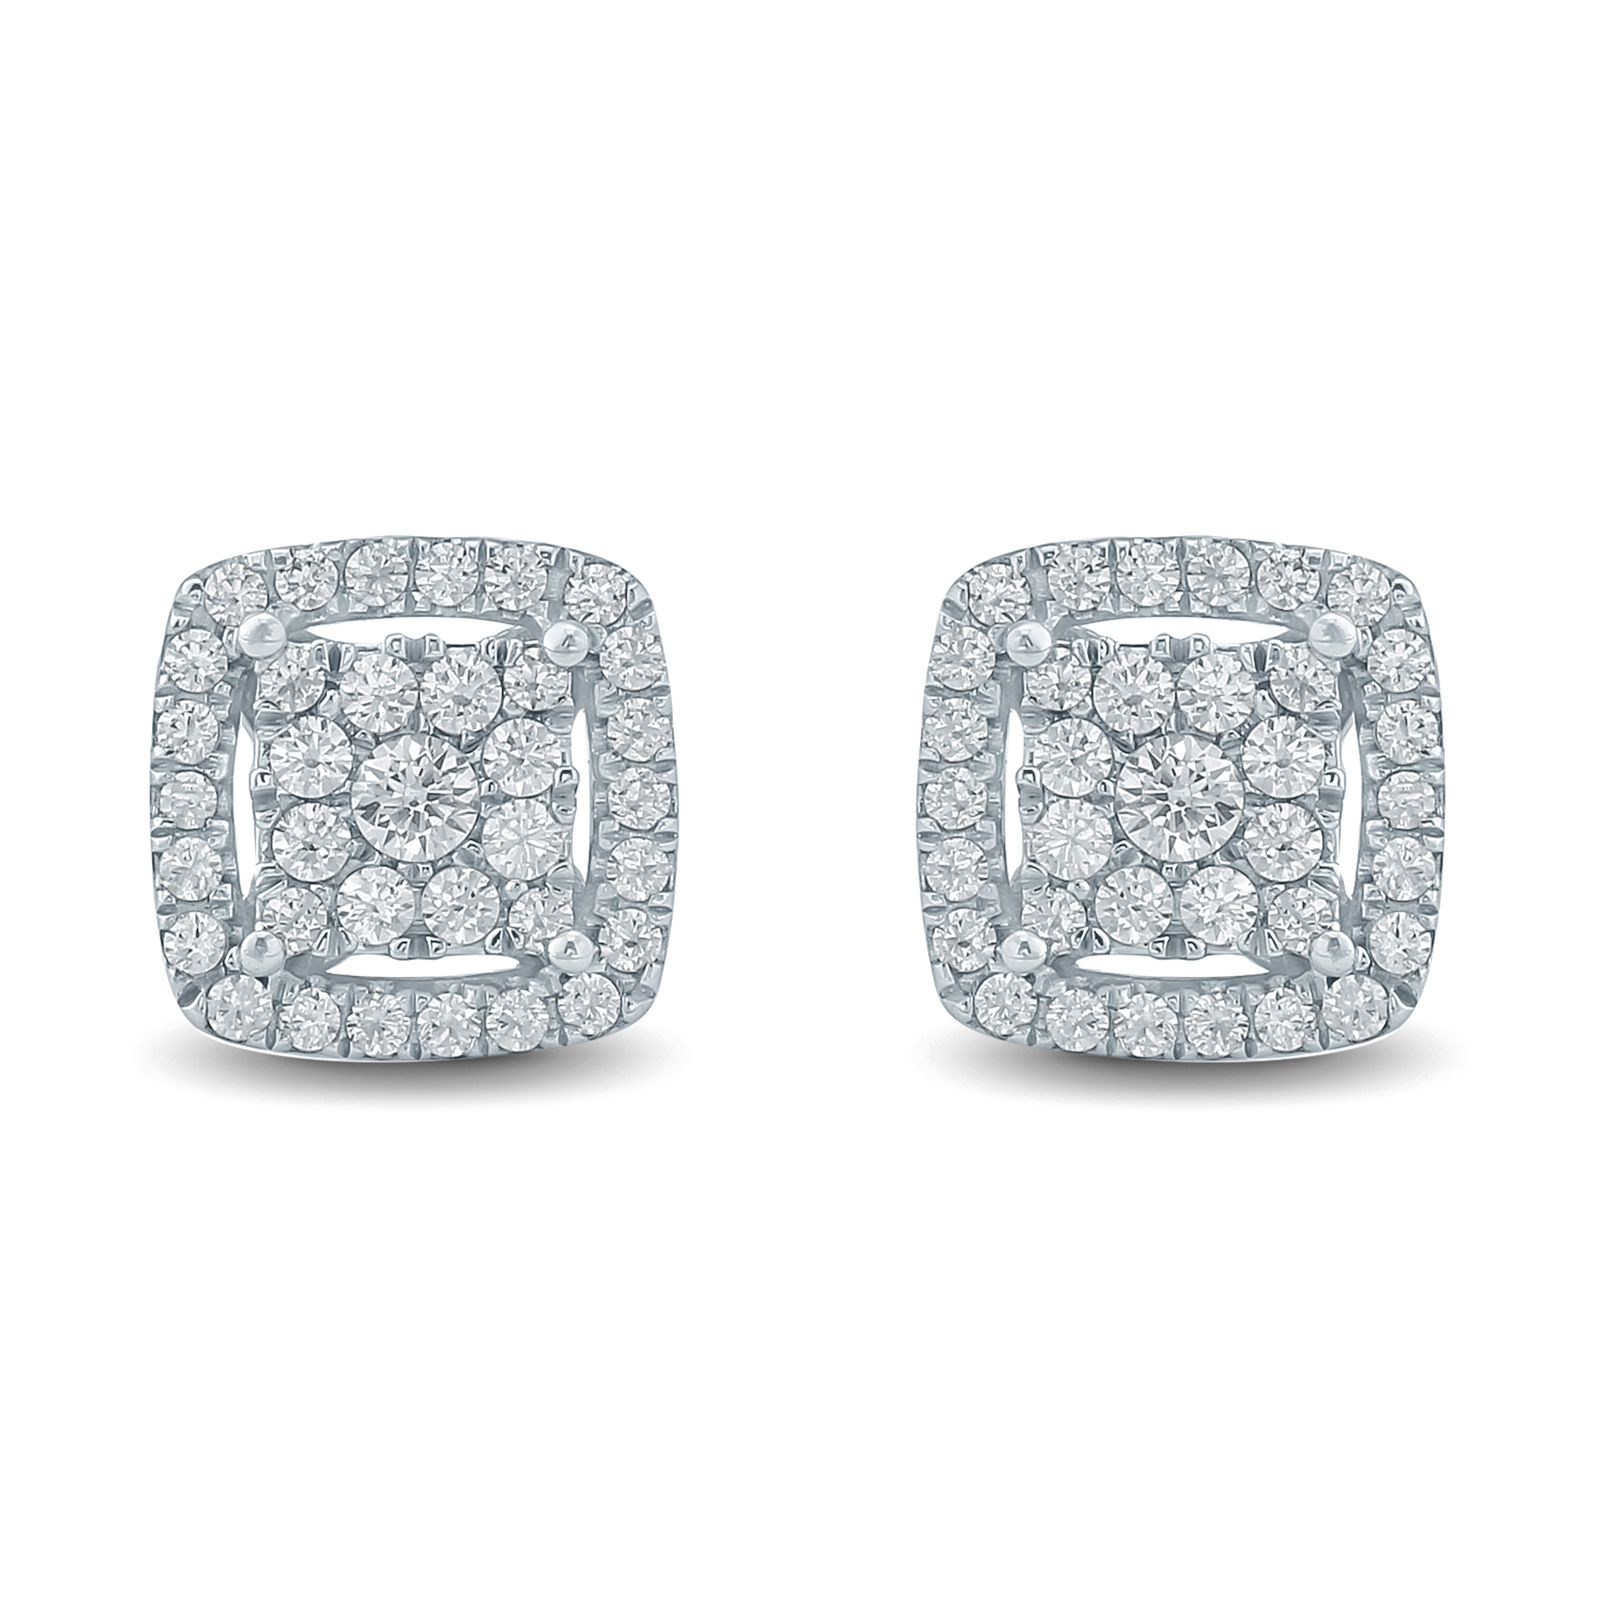 1/2 Carat TW Diamond Halo Earrings in 10K White Gold